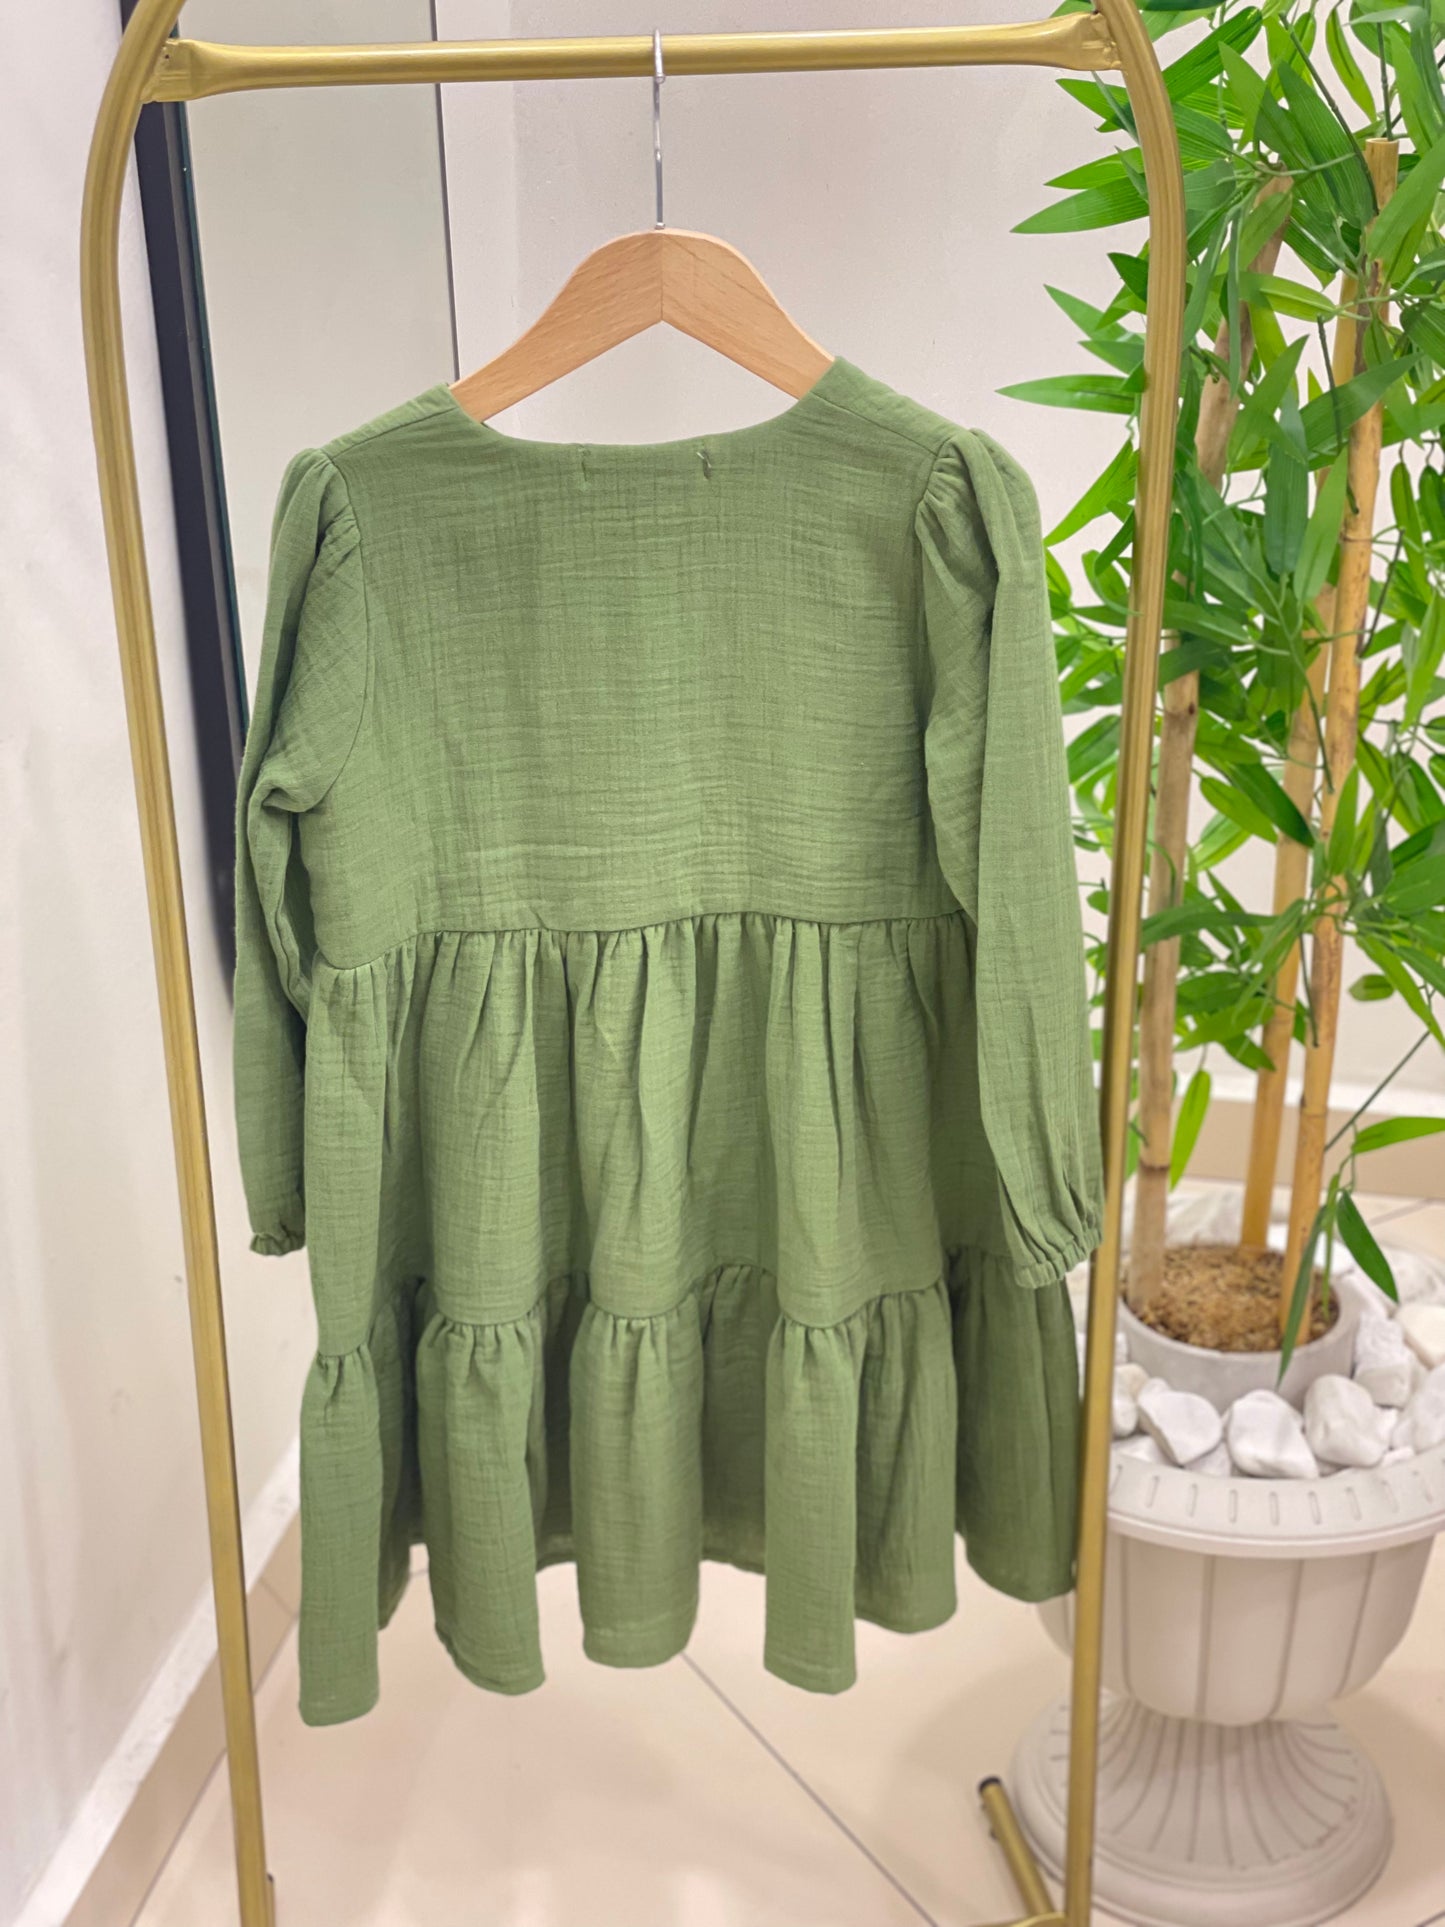 Kız çoçuk yeşil 1.Kalite %100 organik müslin tam boy kat kat tesettür elbise